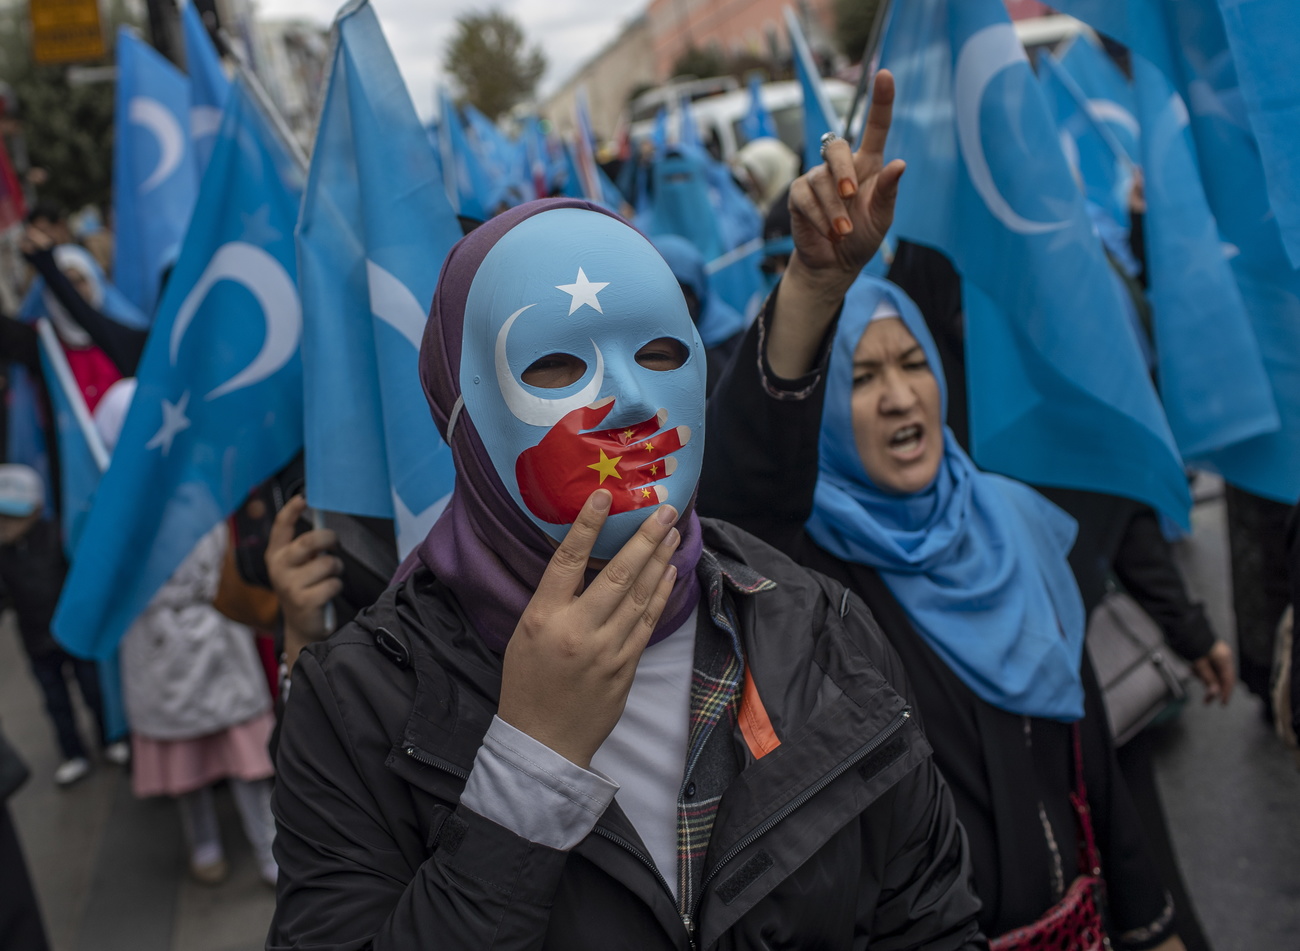 維吾爾人及其他聲援者就中國的拘押營舉行抗議，並宣稱中國在進行種族滅絕。一份聯合國報告指出可能存在反人類罪行。